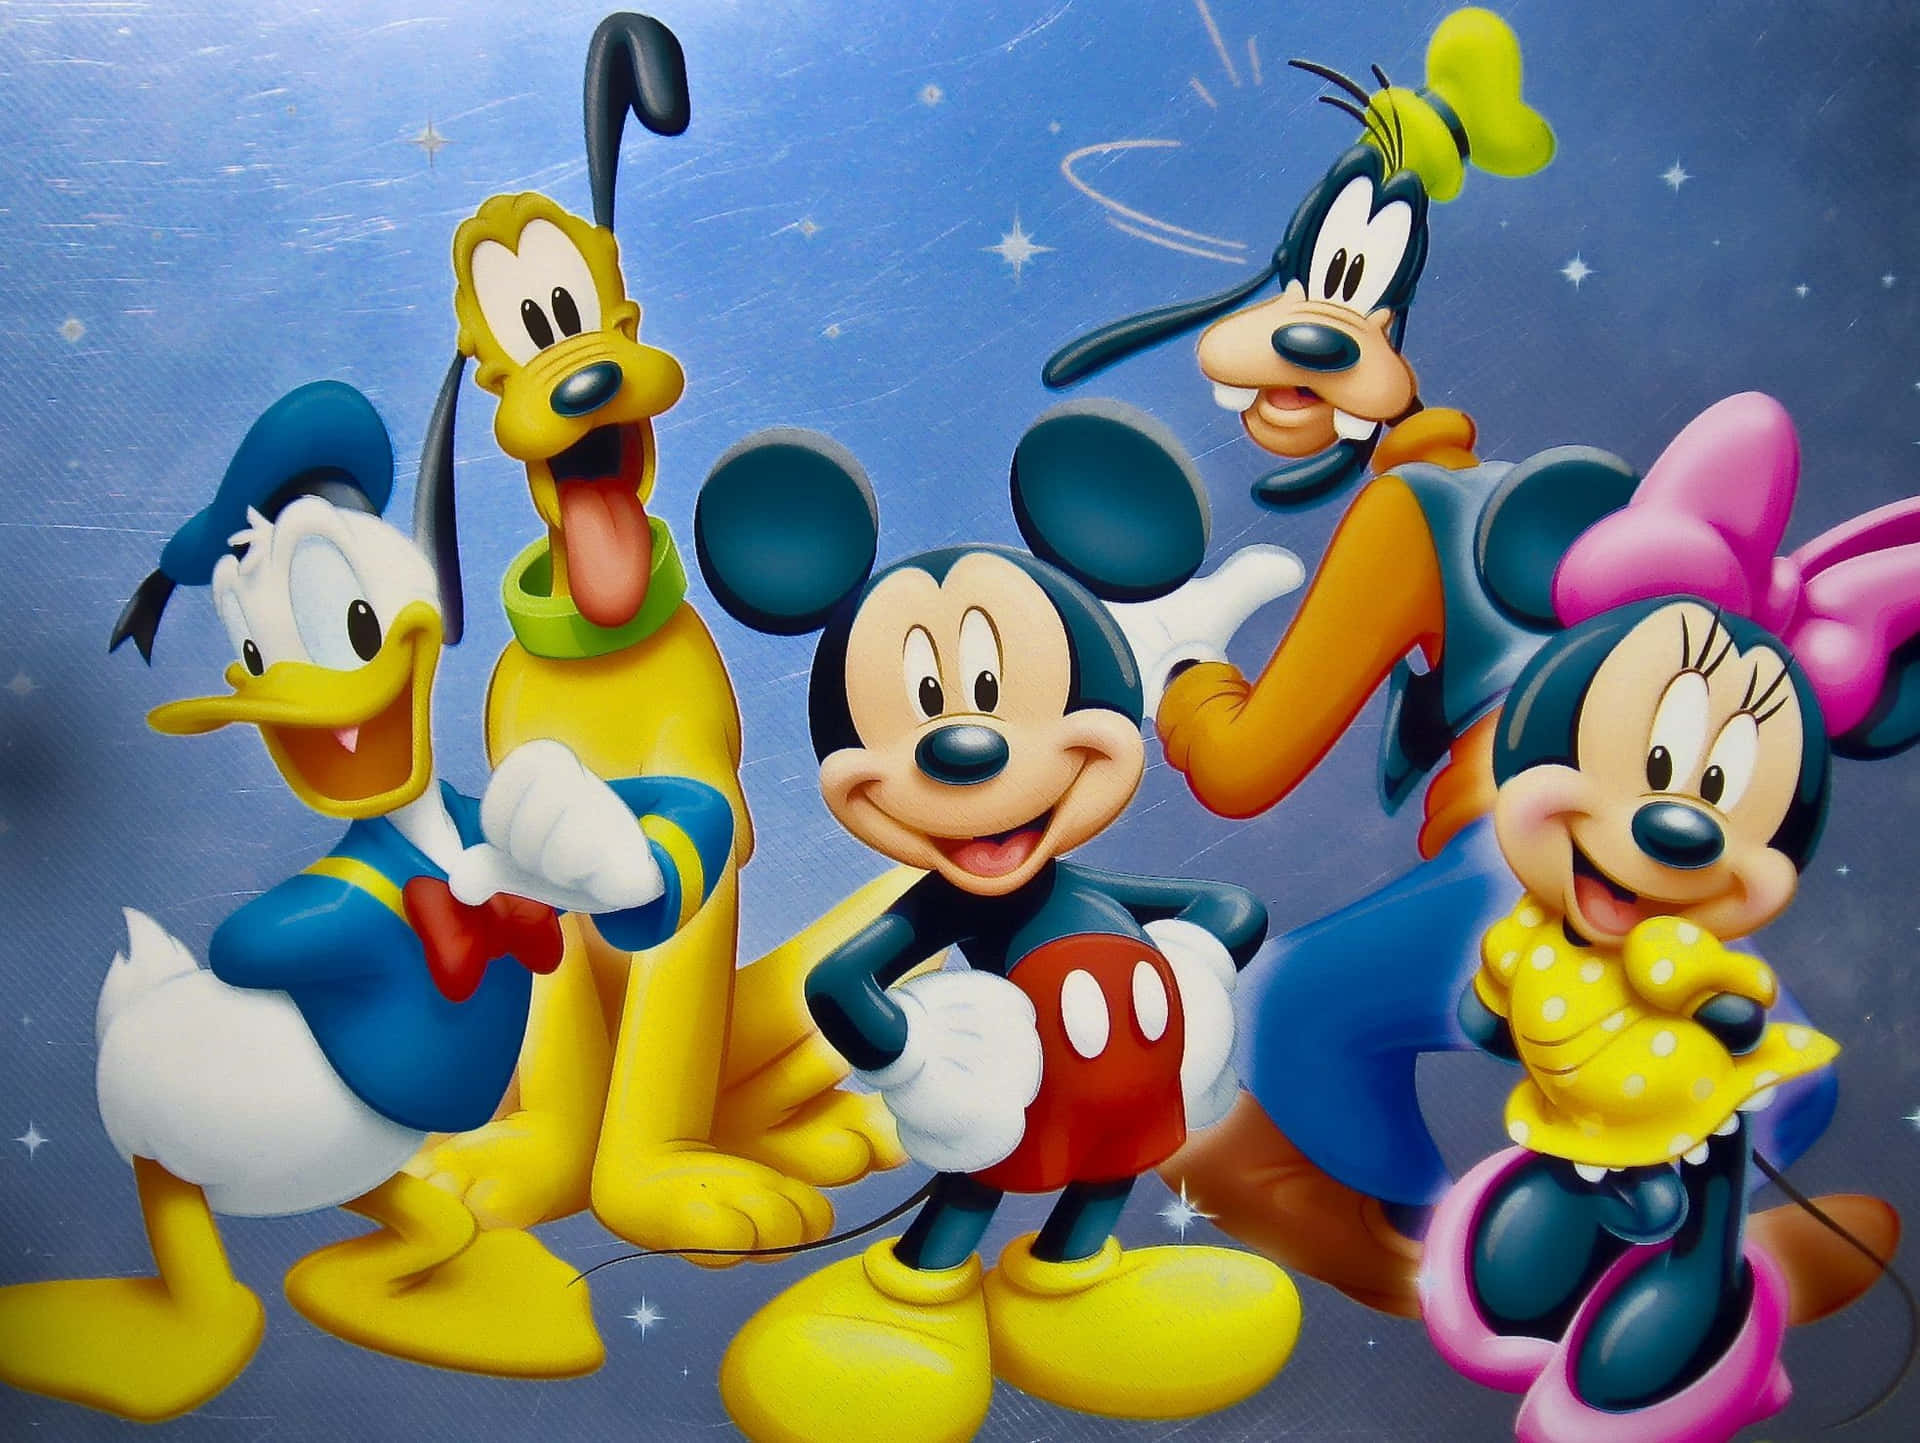 Billedvægge af Disney tegnefilm figurer